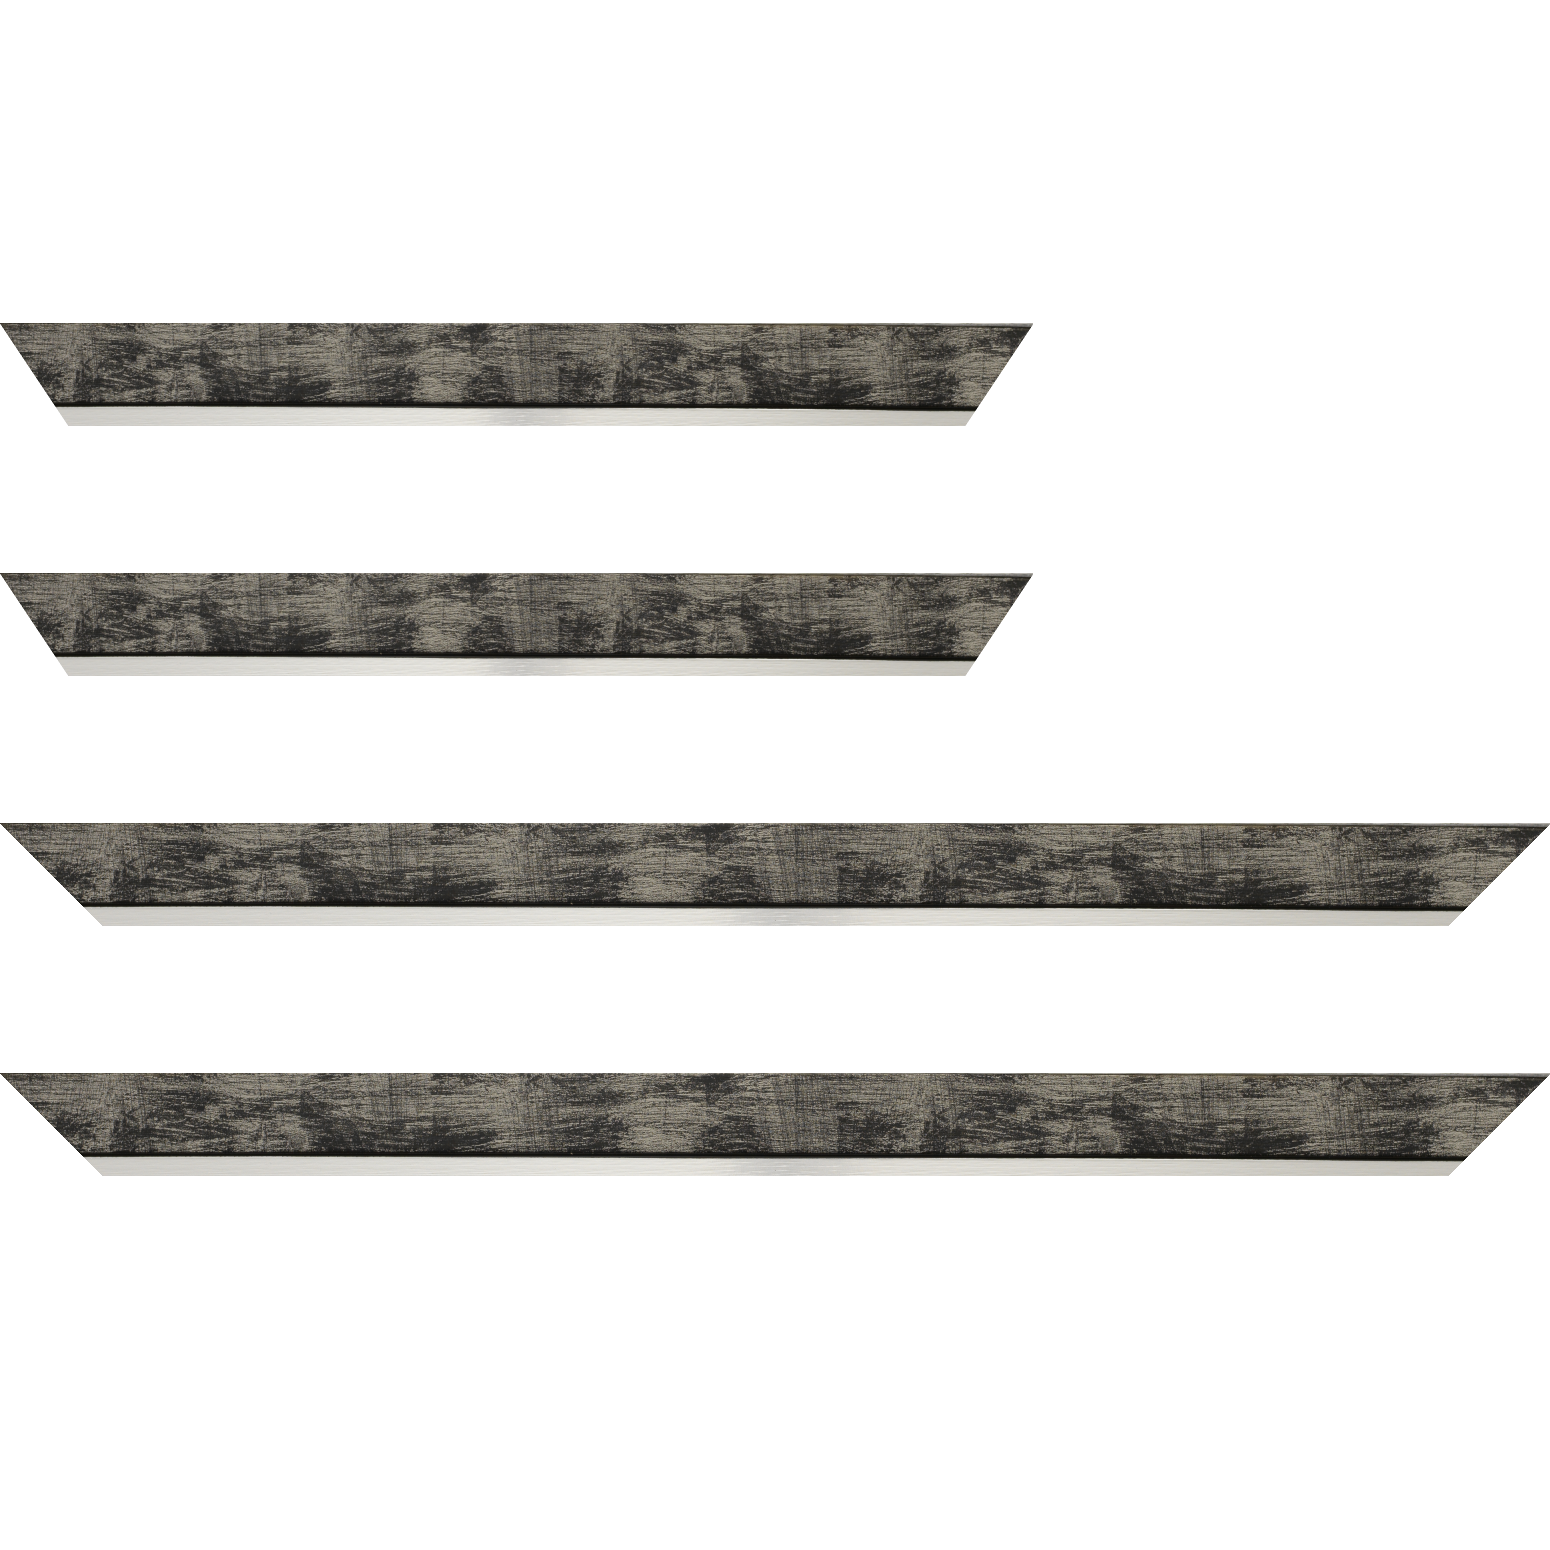 Baguette bois profil plat largeur 3.3cm couleur noir fond argent filet argent - 28x34